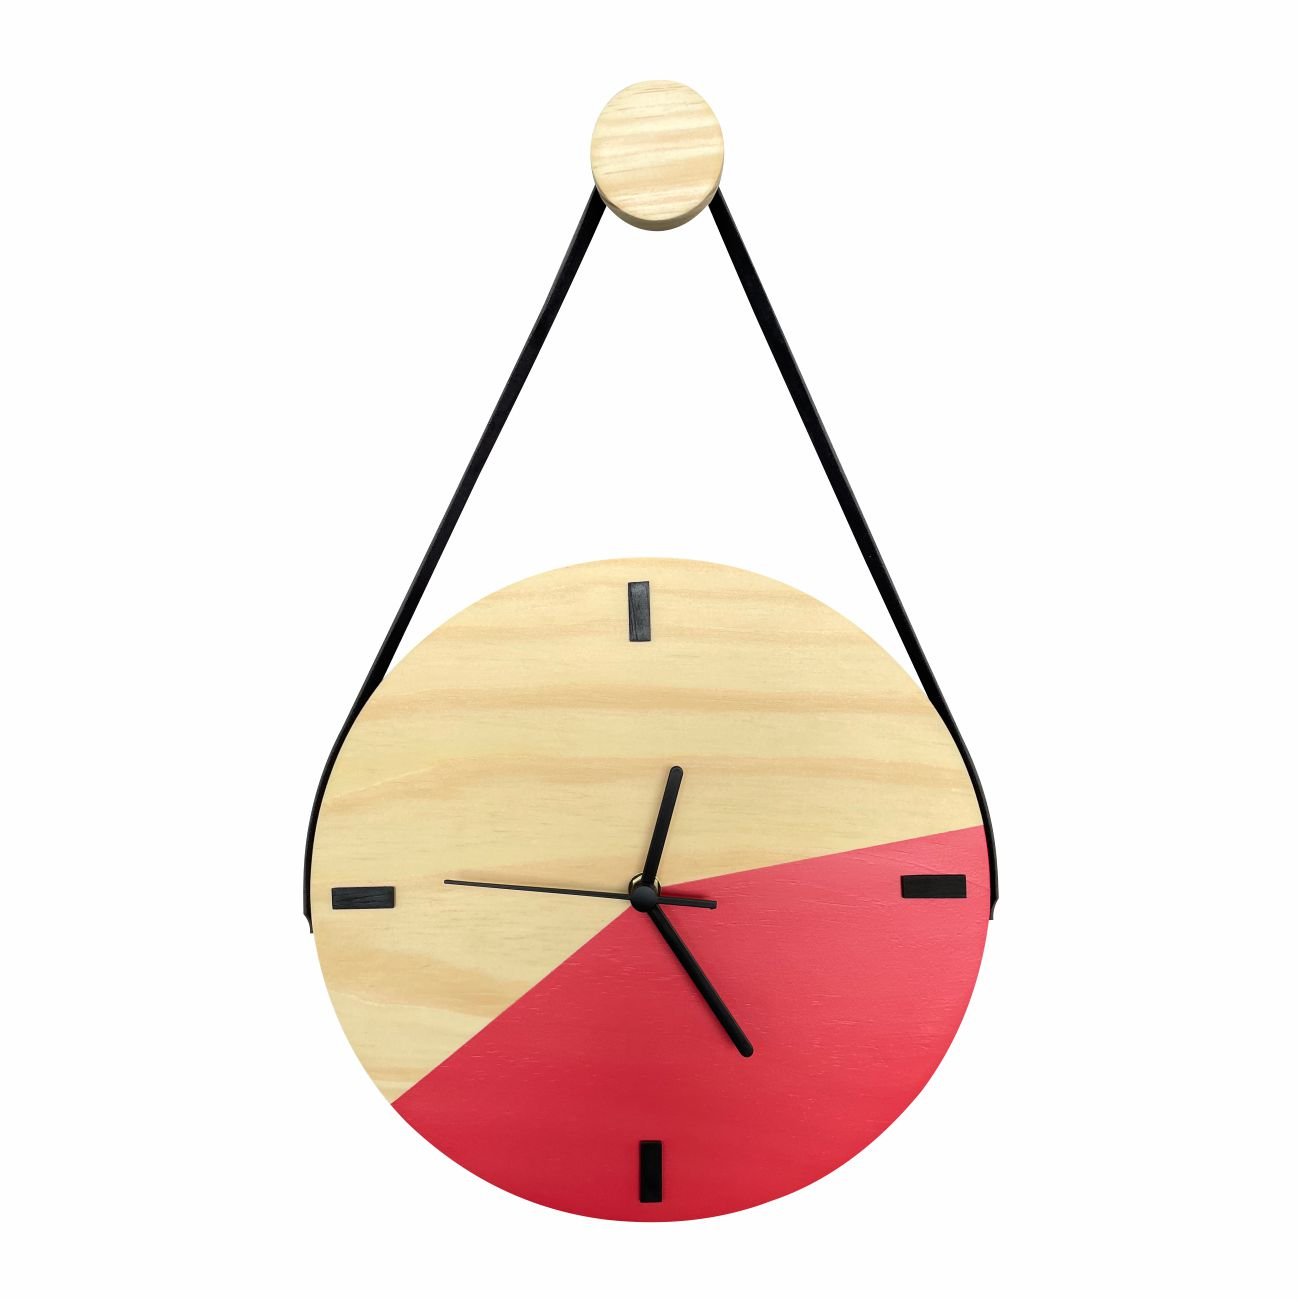 Relógio Decorativo Edward Clock Escandinavo Goiaba com Alça - 1